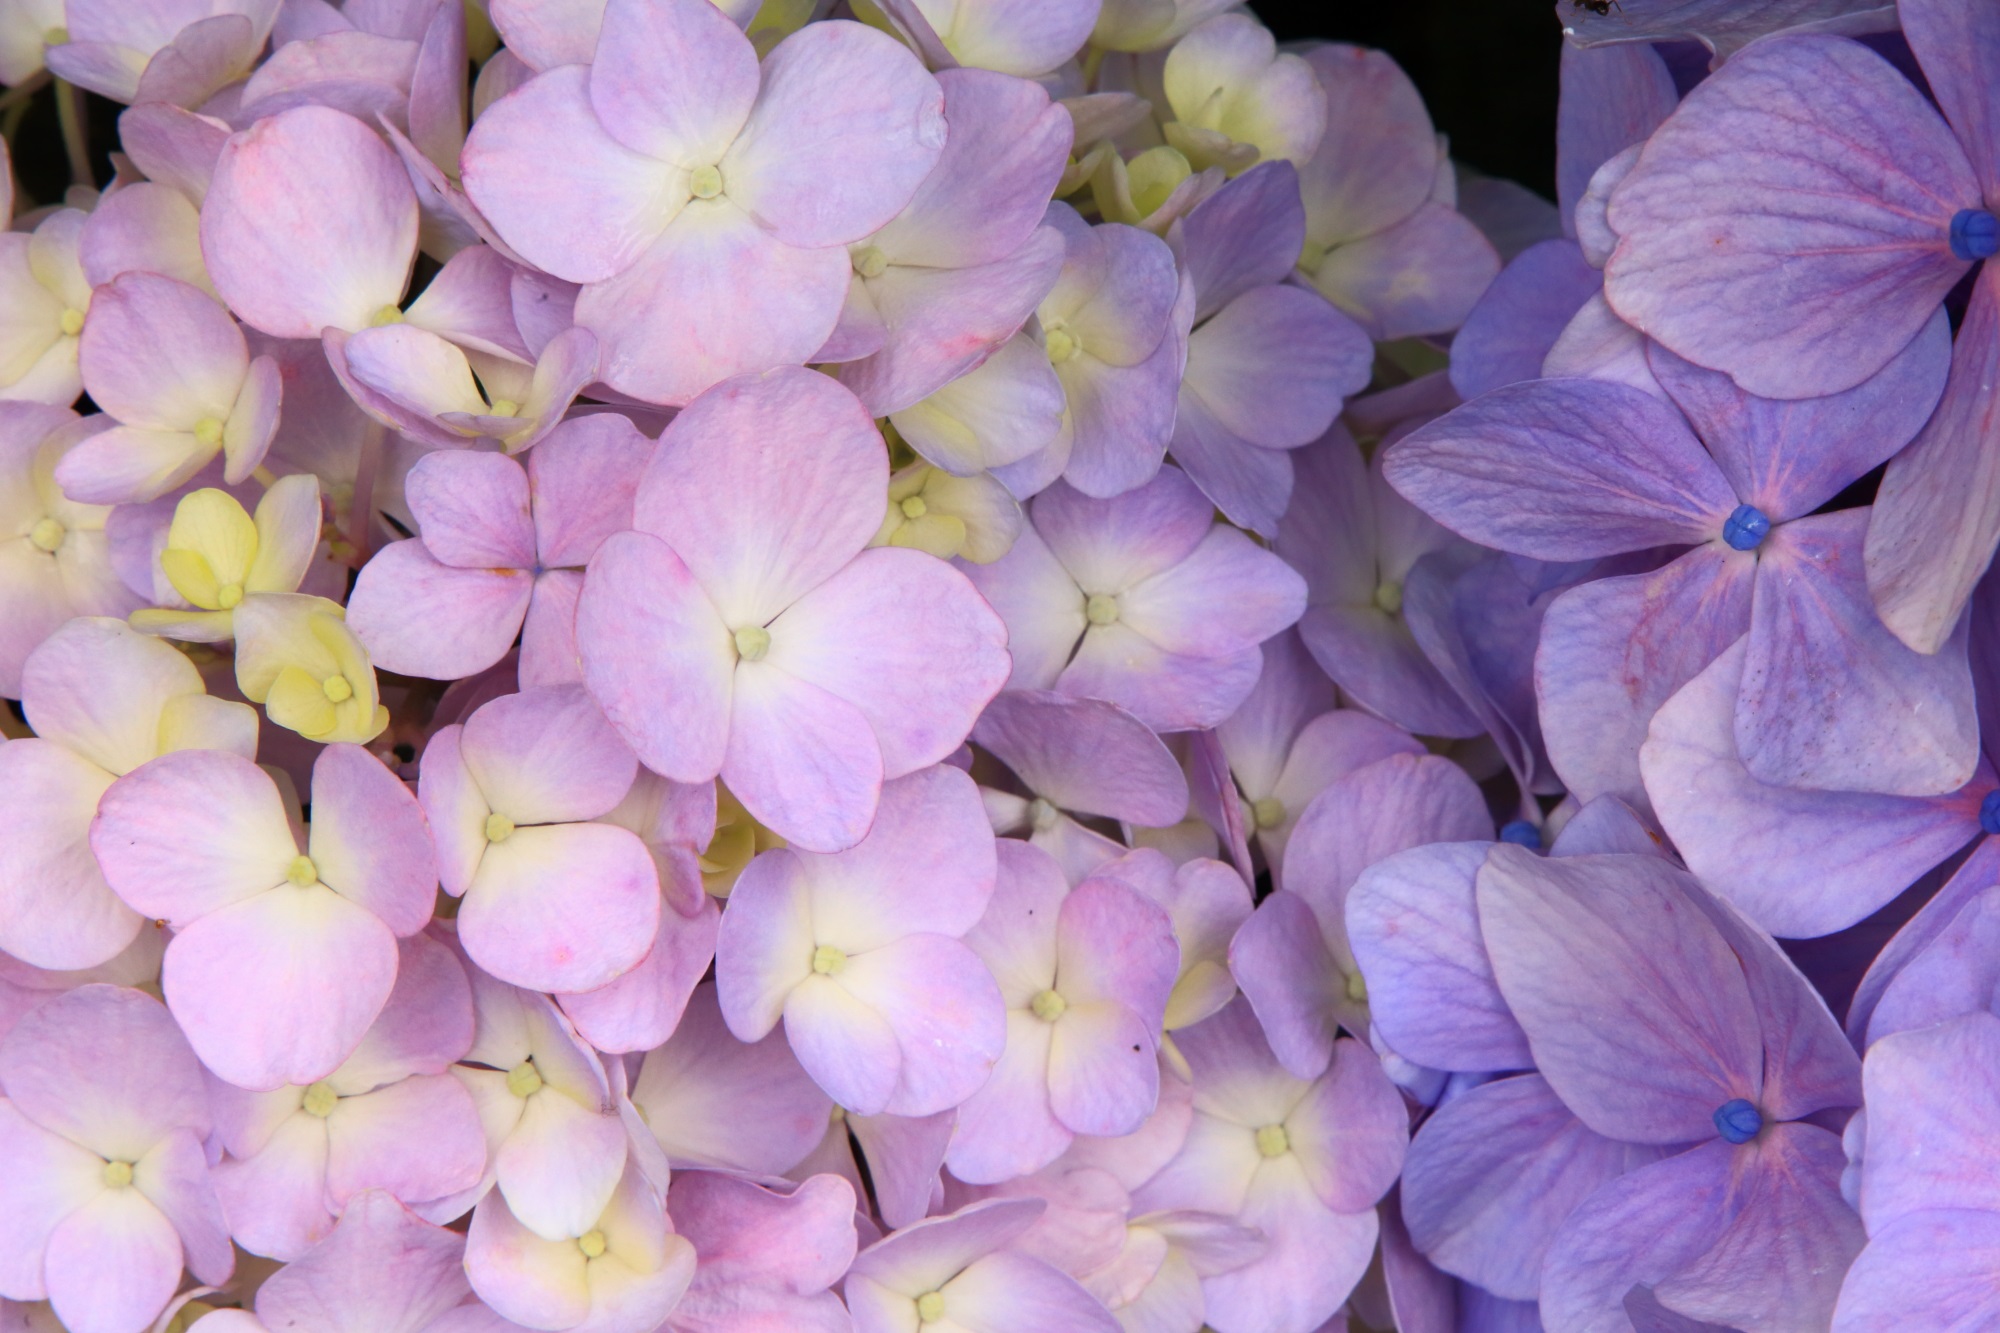 ほのかな色合いの柔らかい雰囲気がする紫陽花